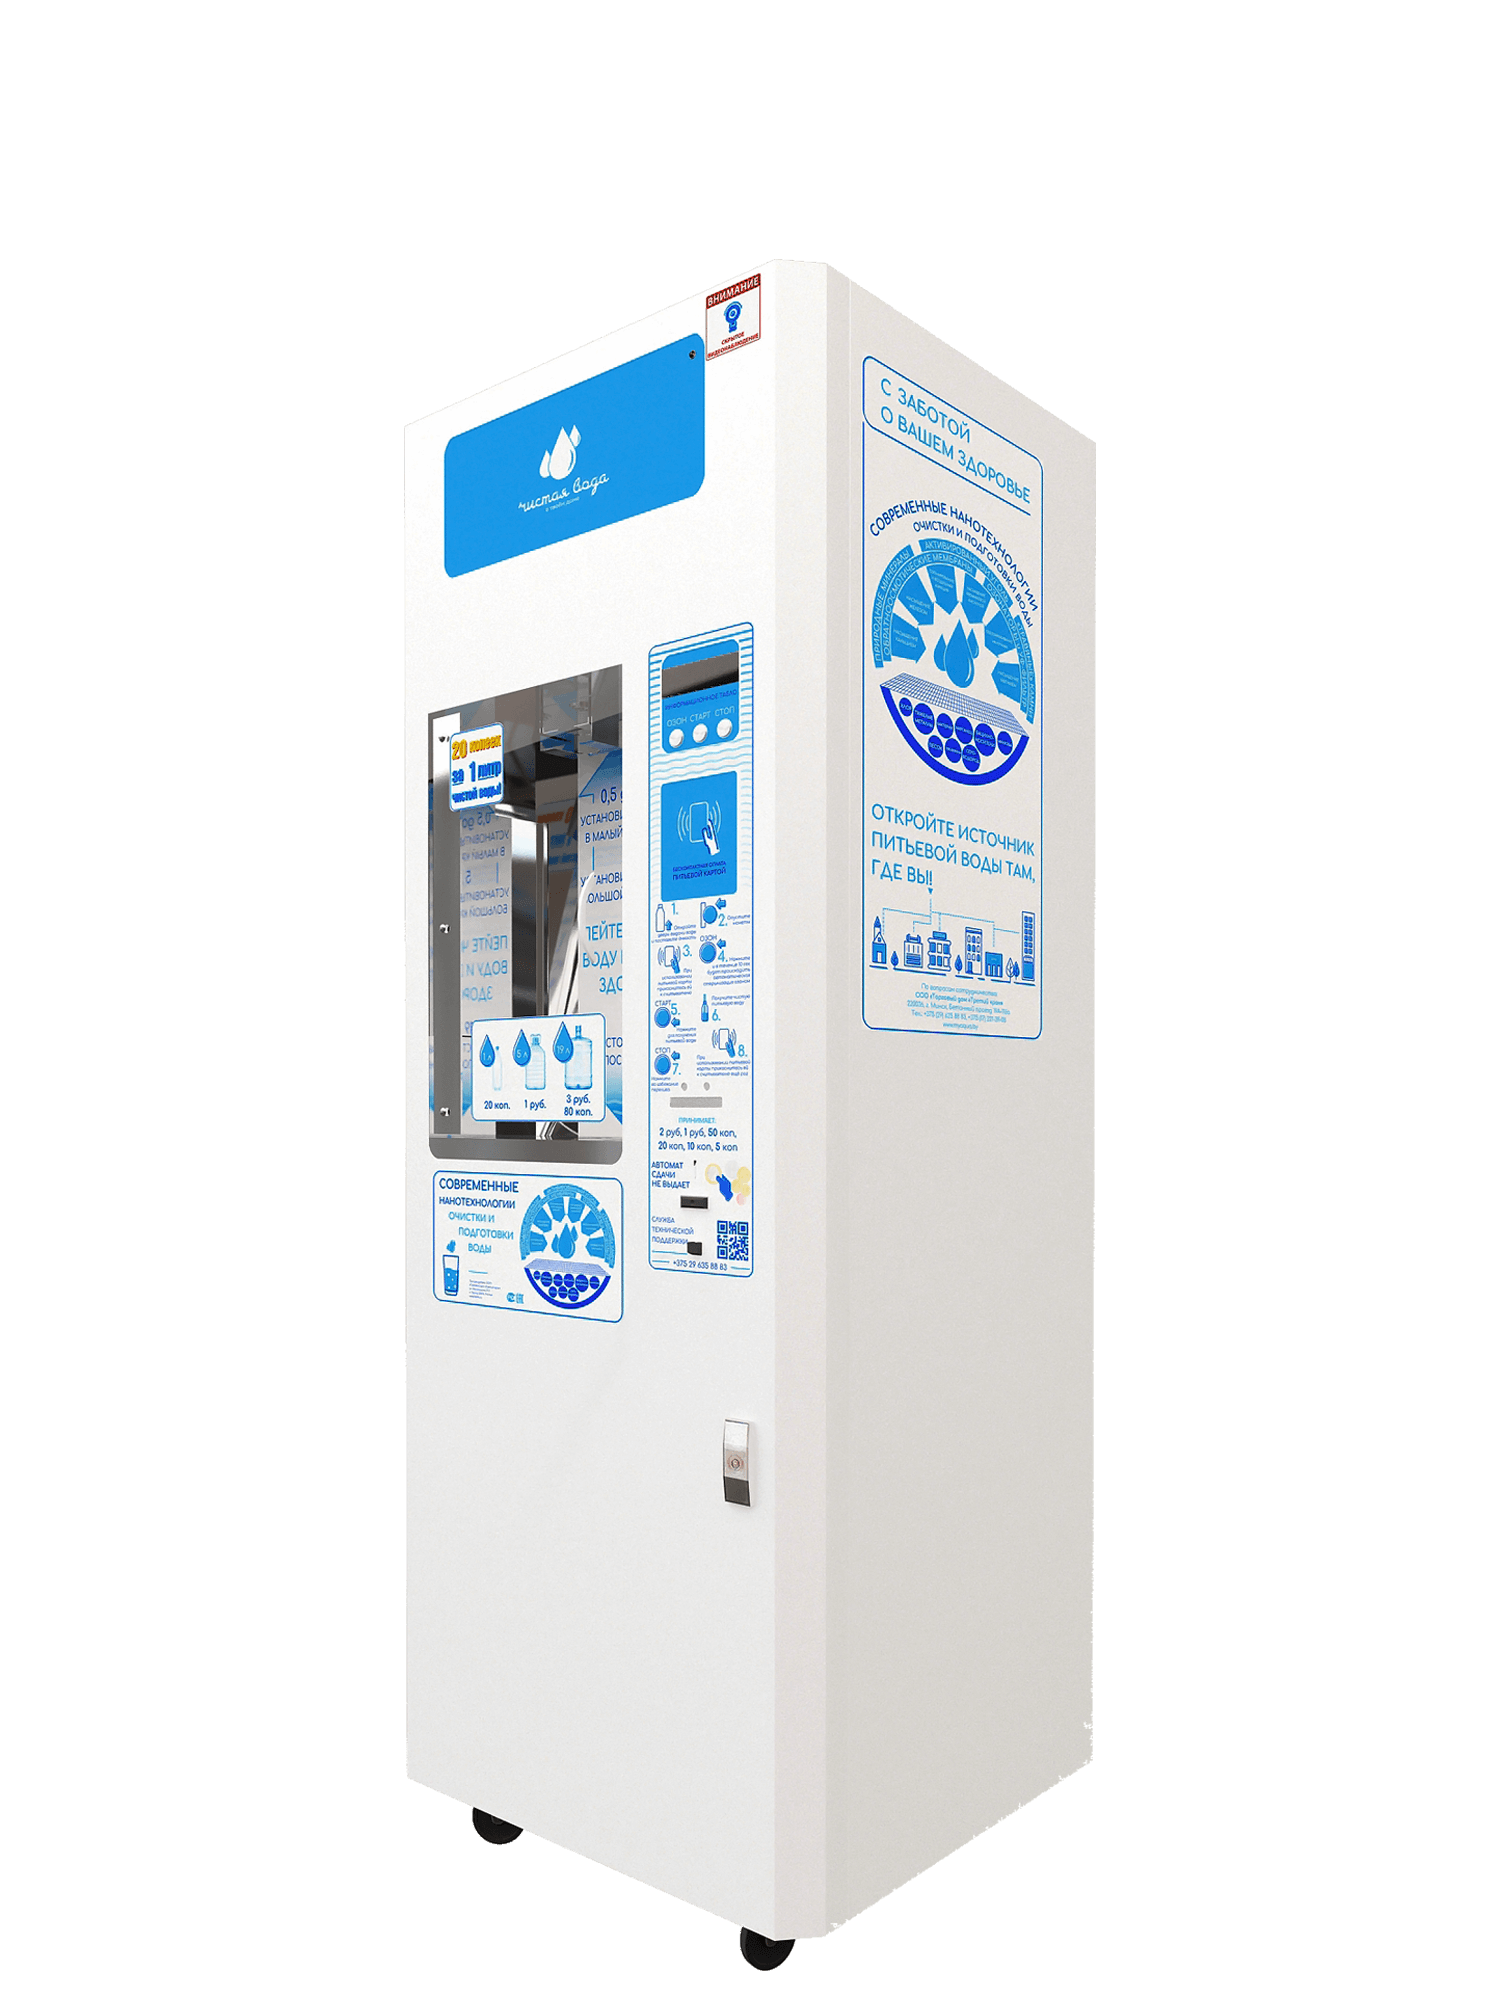 Аппарат по продаже воды Neostyle 9000. Вендинговый аппарат (водомат). Автомат по розливу воды. Уличный автомат с водой.